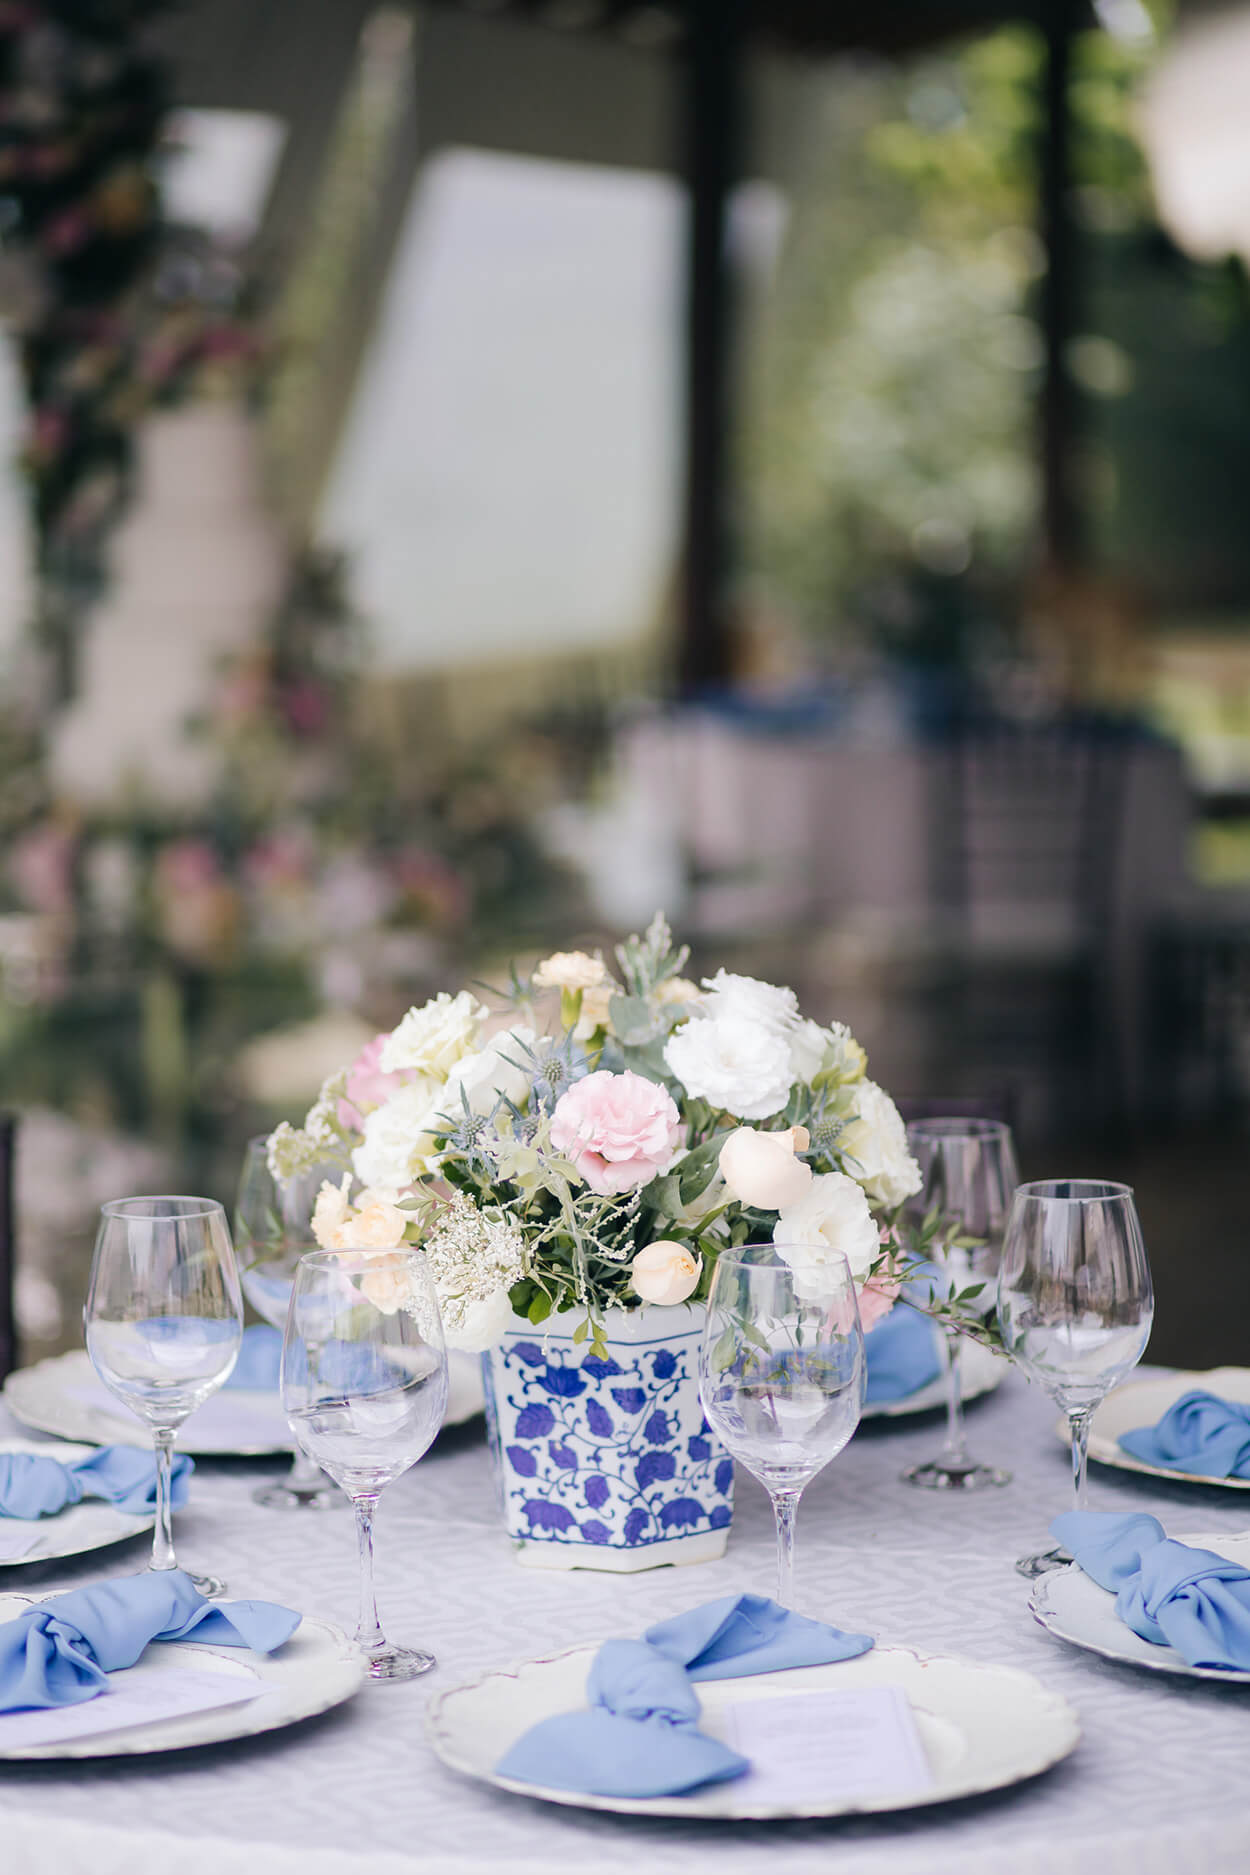 mesa redonda com toalha branca e mesa posta azul com vasos de flores brancas e rosas no centro